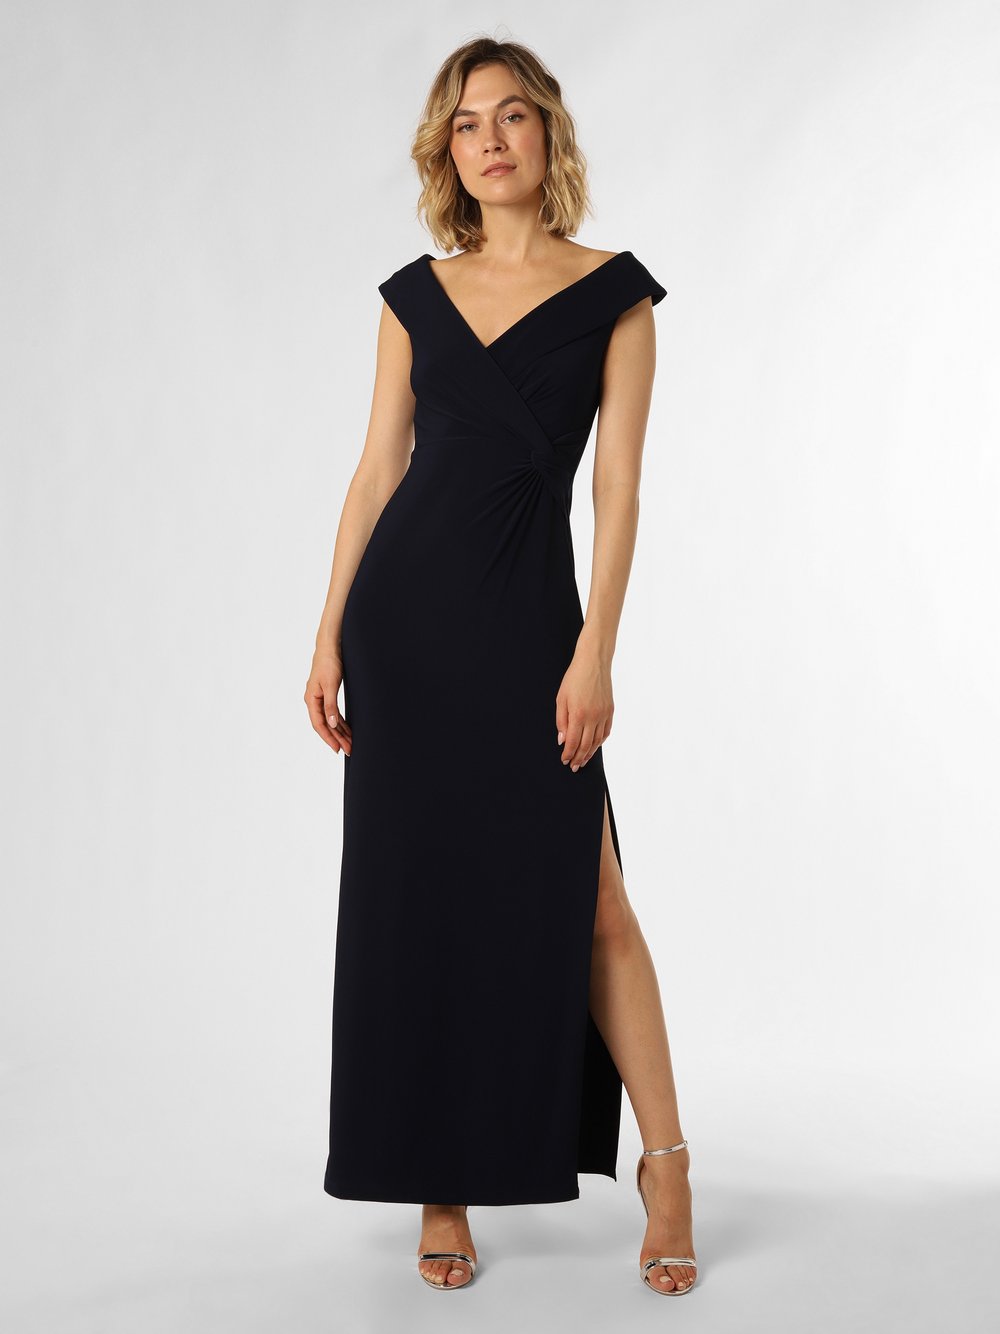 Lauren Ralph Lauren Damska sukienka wieczorowa Kobiety niebieski jednolity, 36